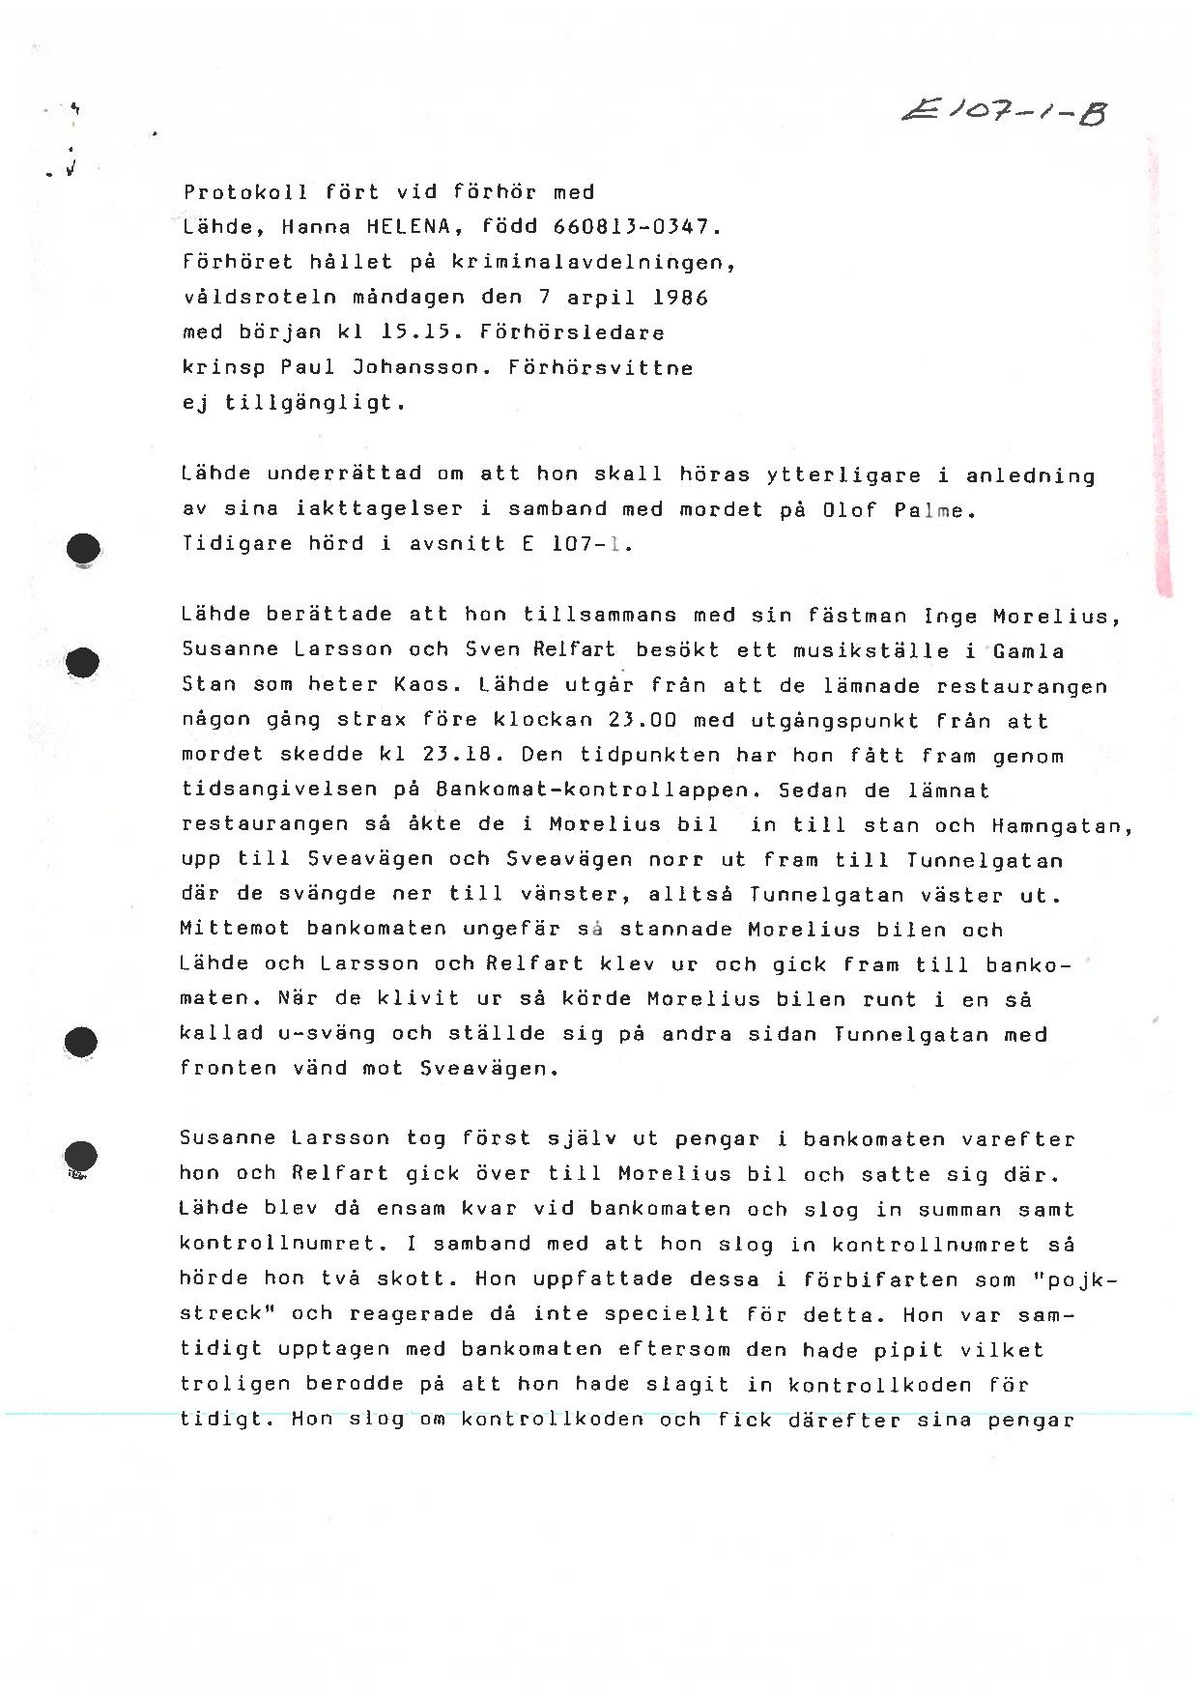 Pol-1986-04-07 E107-01-B Helena-Lädhe.pdf